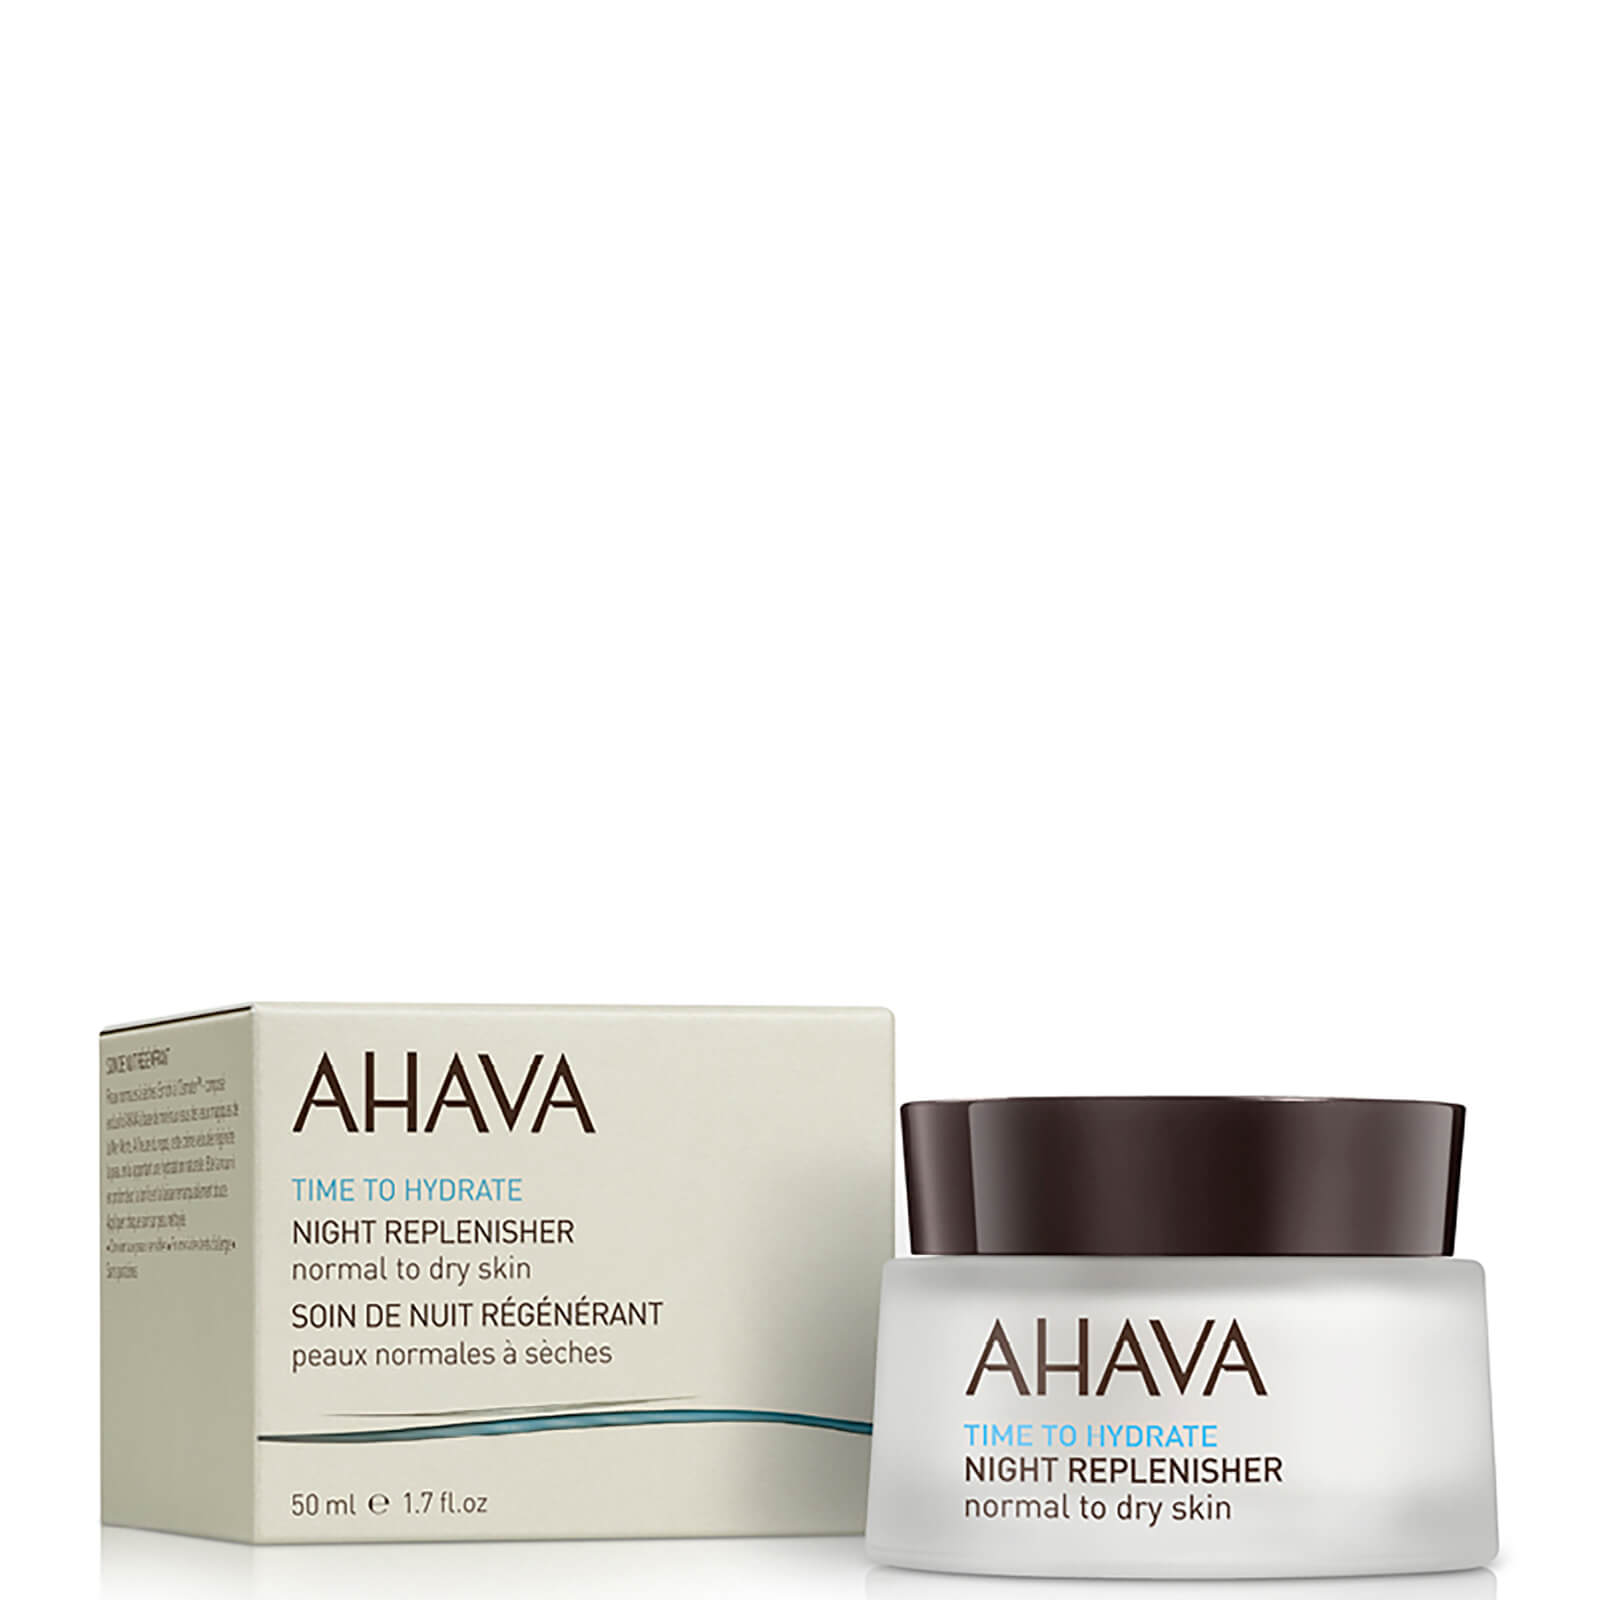 AHAVA Night Replenisher Normal to Dry Skin 50 ml